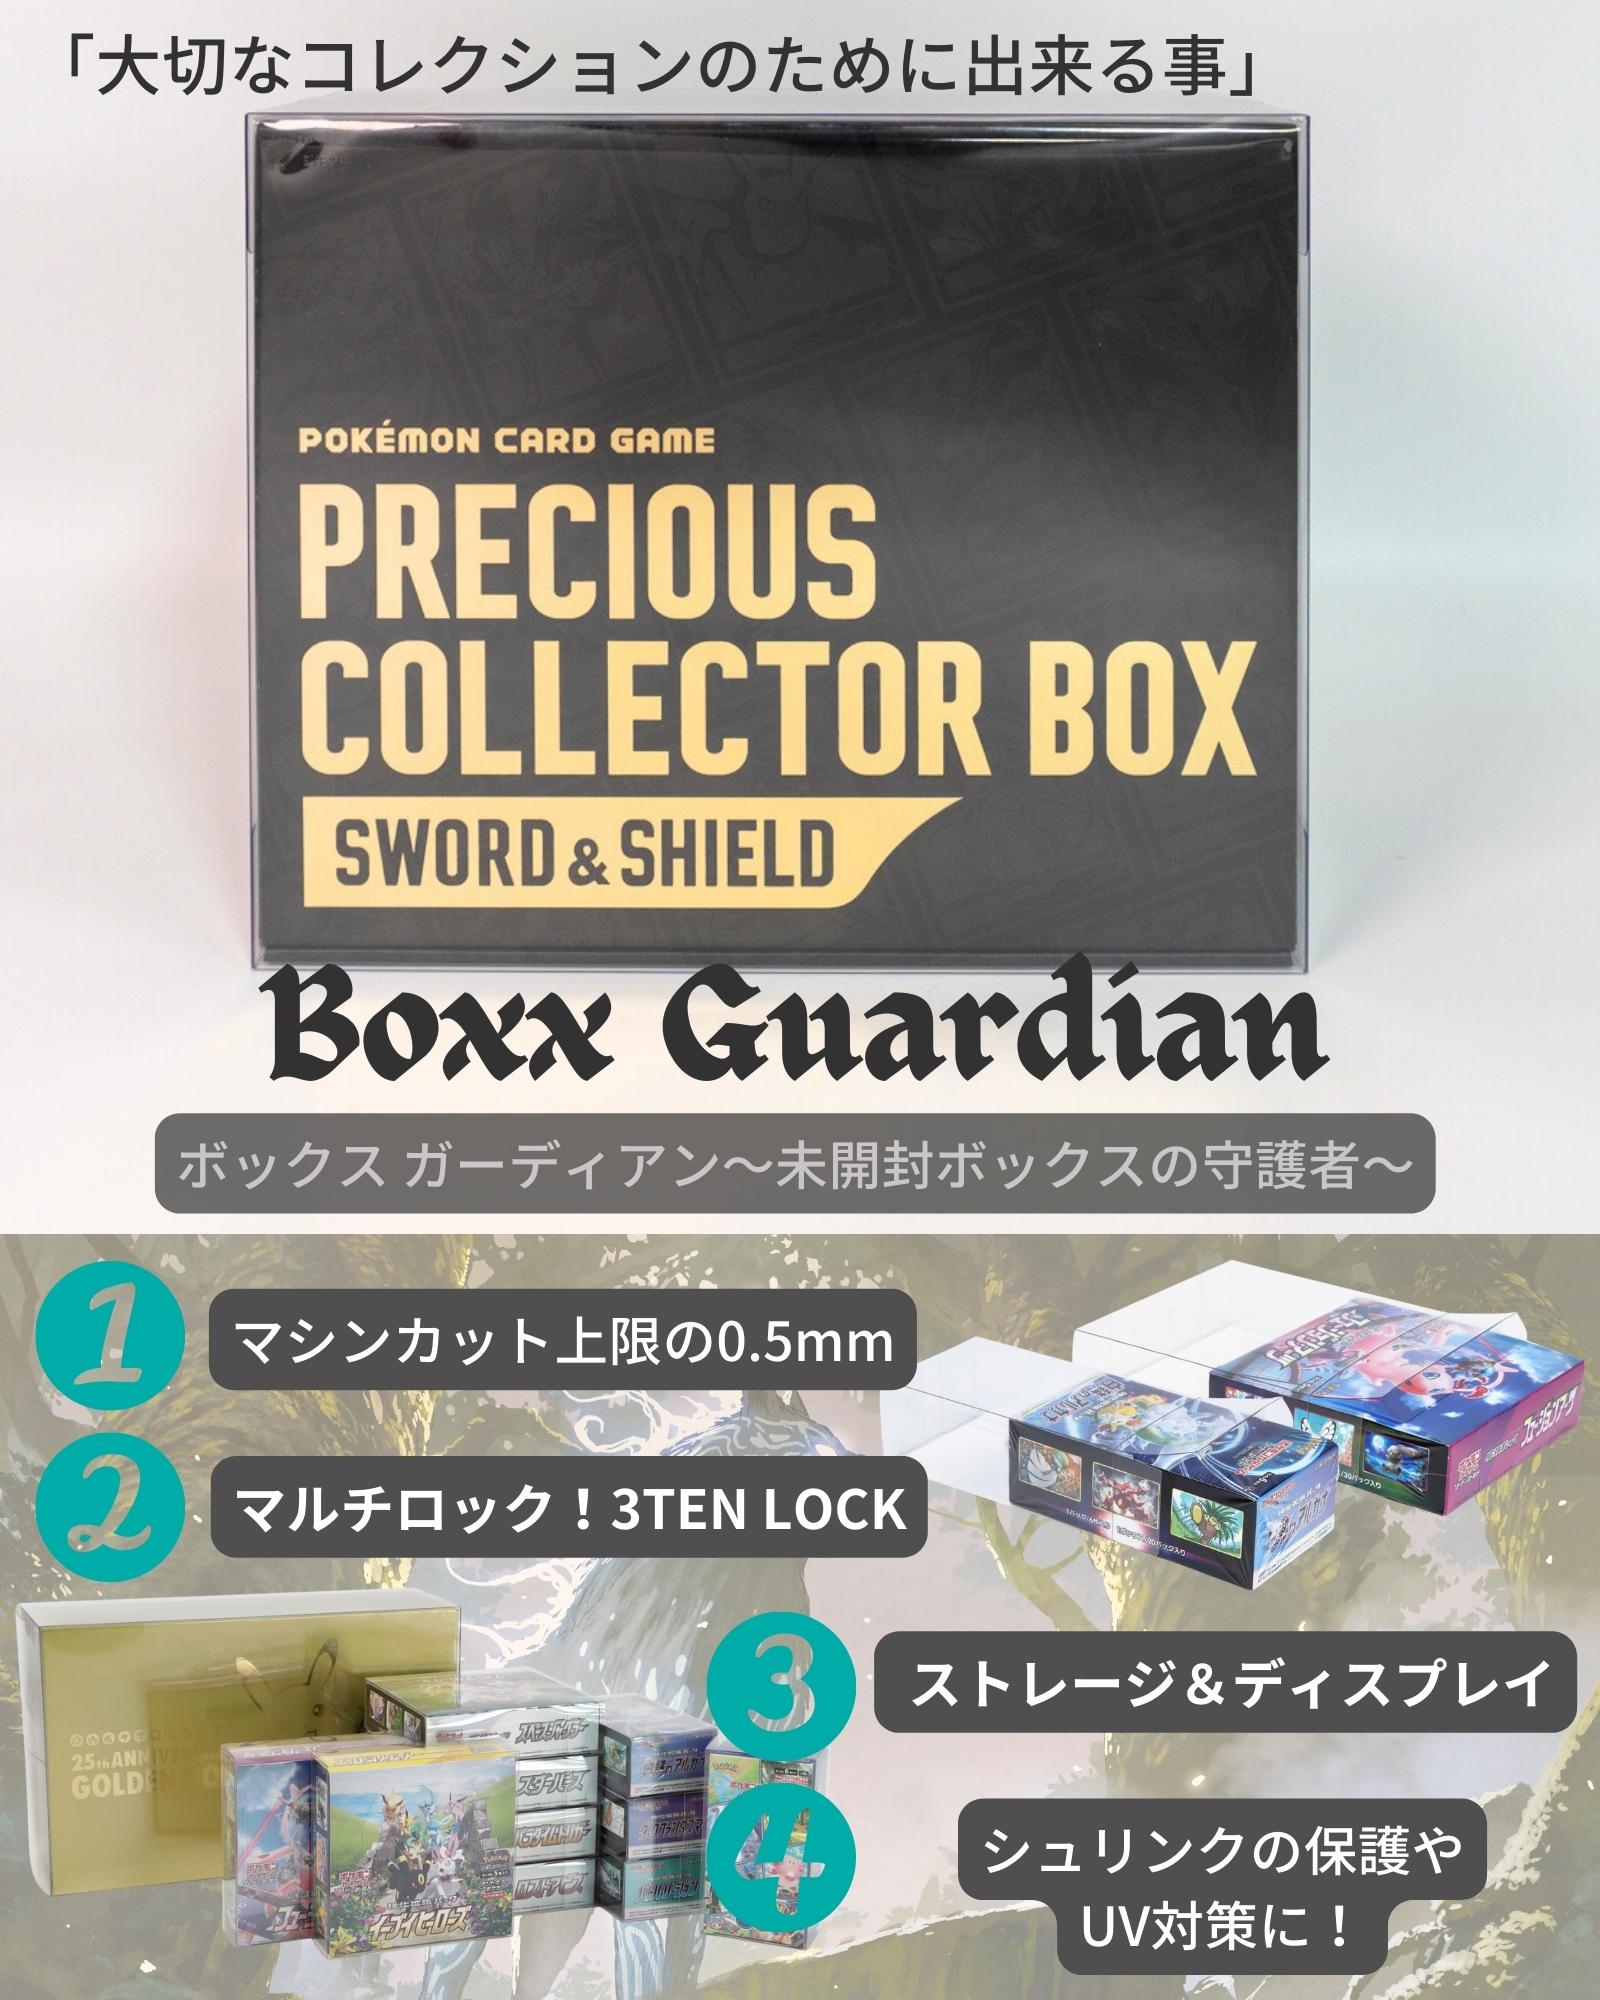 Boxx Guardian ポケモンカードBOX用 プレシャスコレクターボックス